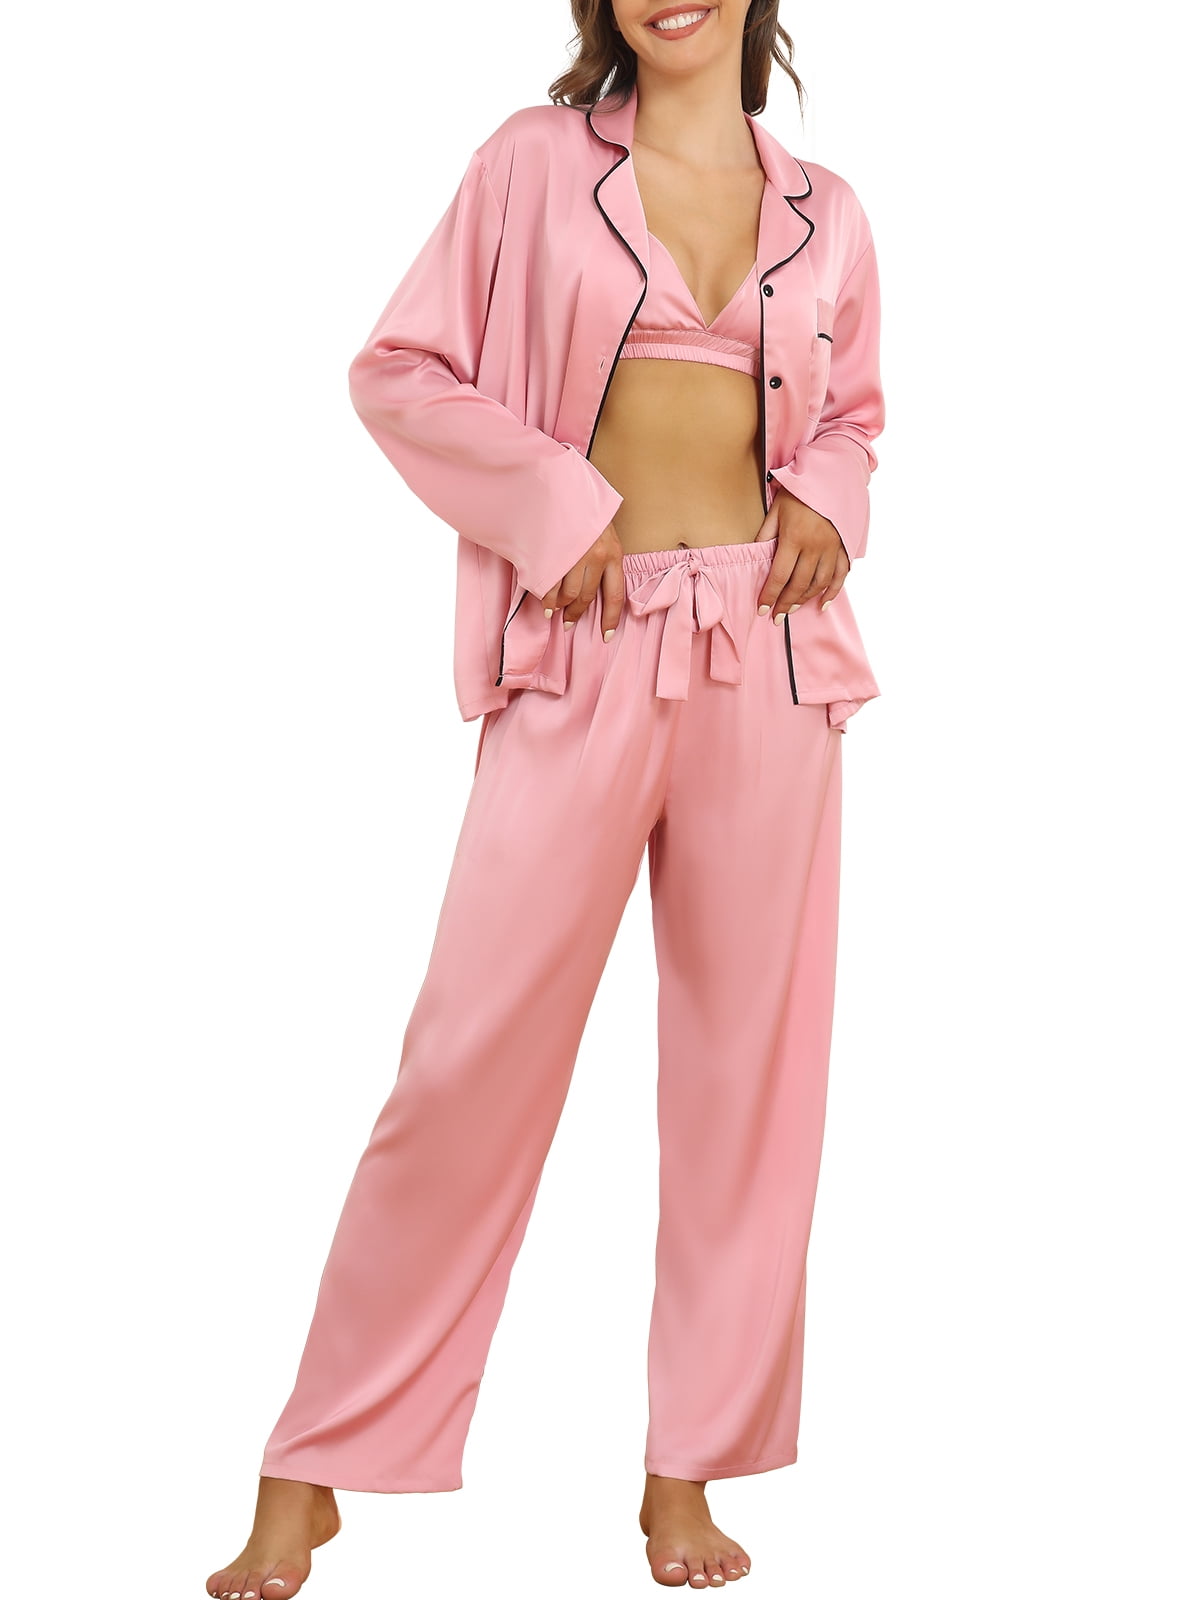 Silk Satin Pajama Sets for Women 3Pcs Pajamas with Bra Button Up